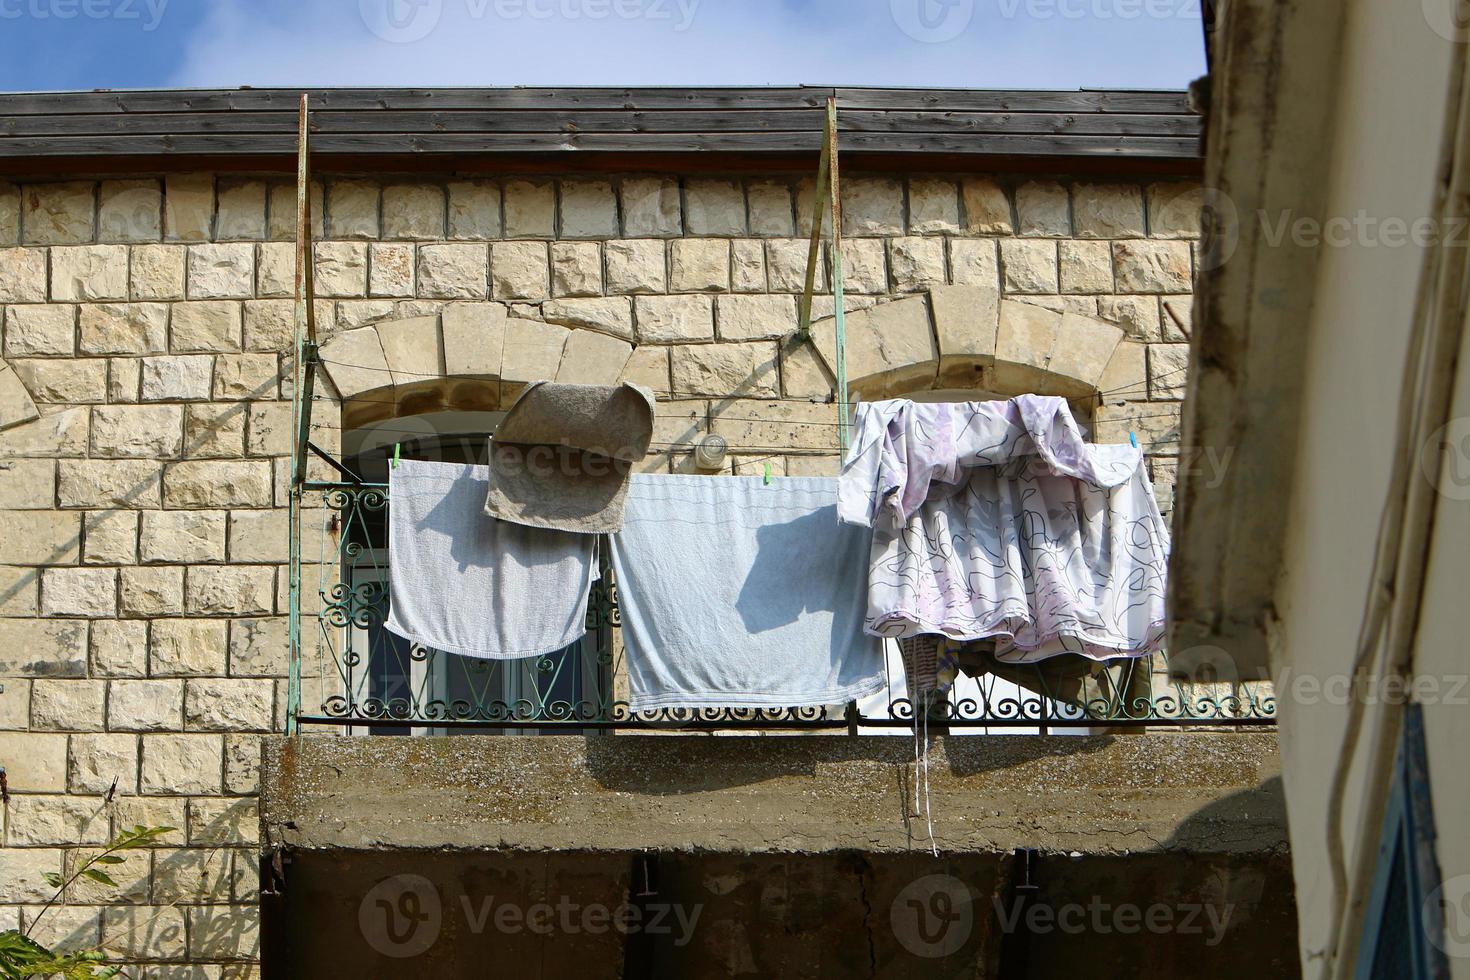 vor dem fenster wird wäsche an einem seil an der fassade des gebäudes getrocknet. foto